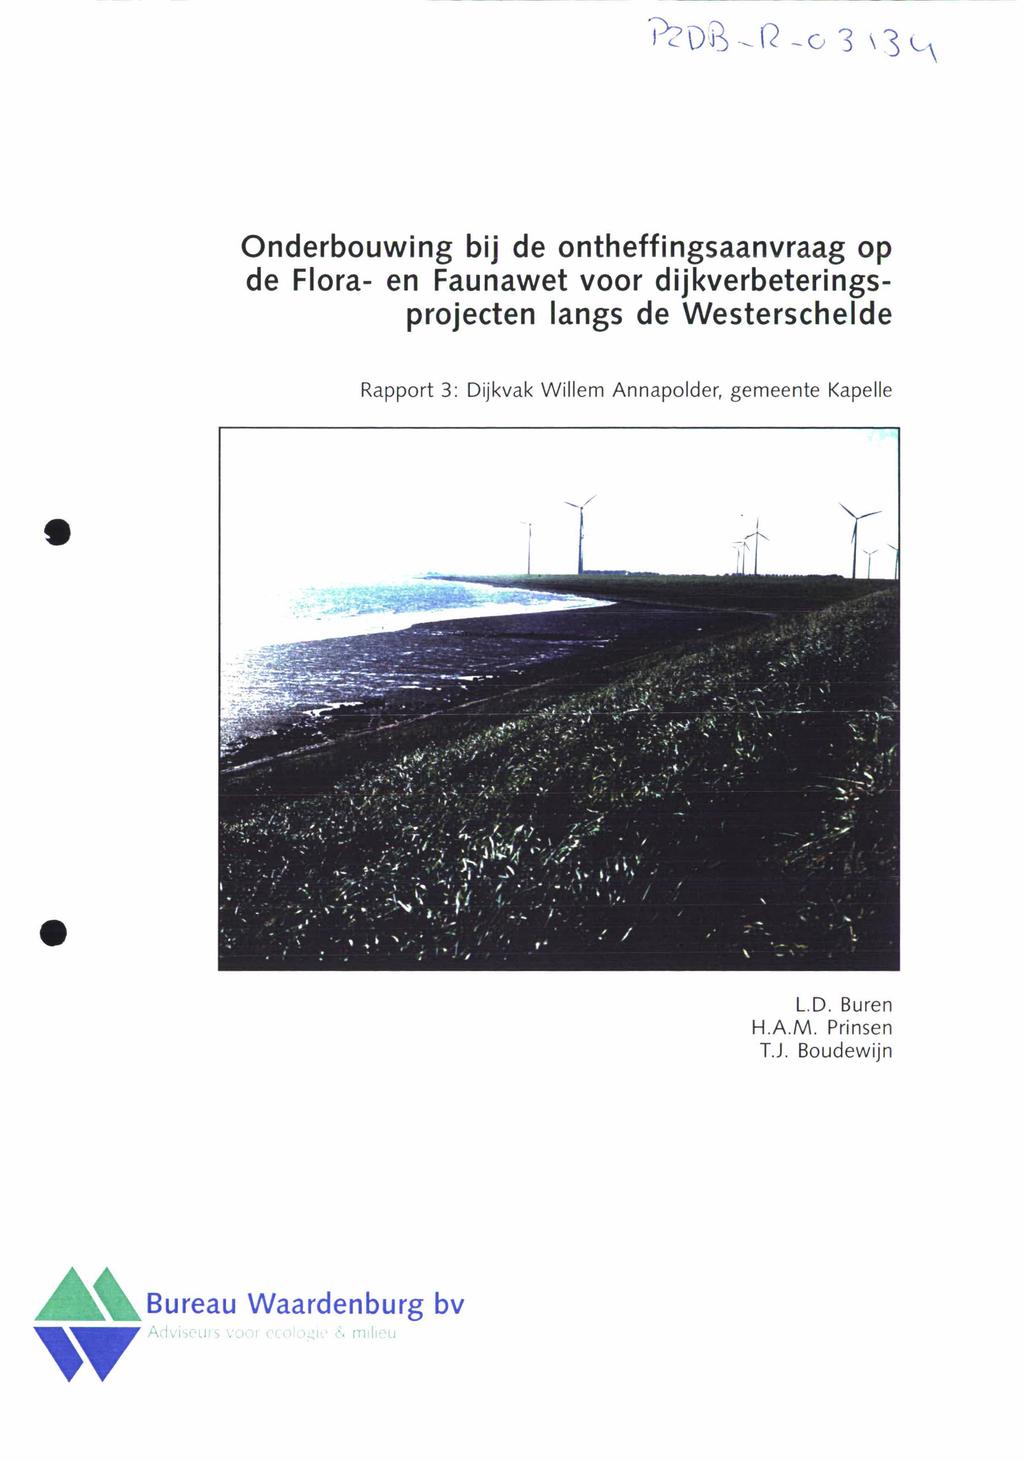 Onderbouwing bij de ontheffingsaanvraag op de Flora- en Faunawet voor dijkverbeteringsprojecten langs de Westerschelde Rapport 3: Dijkvak